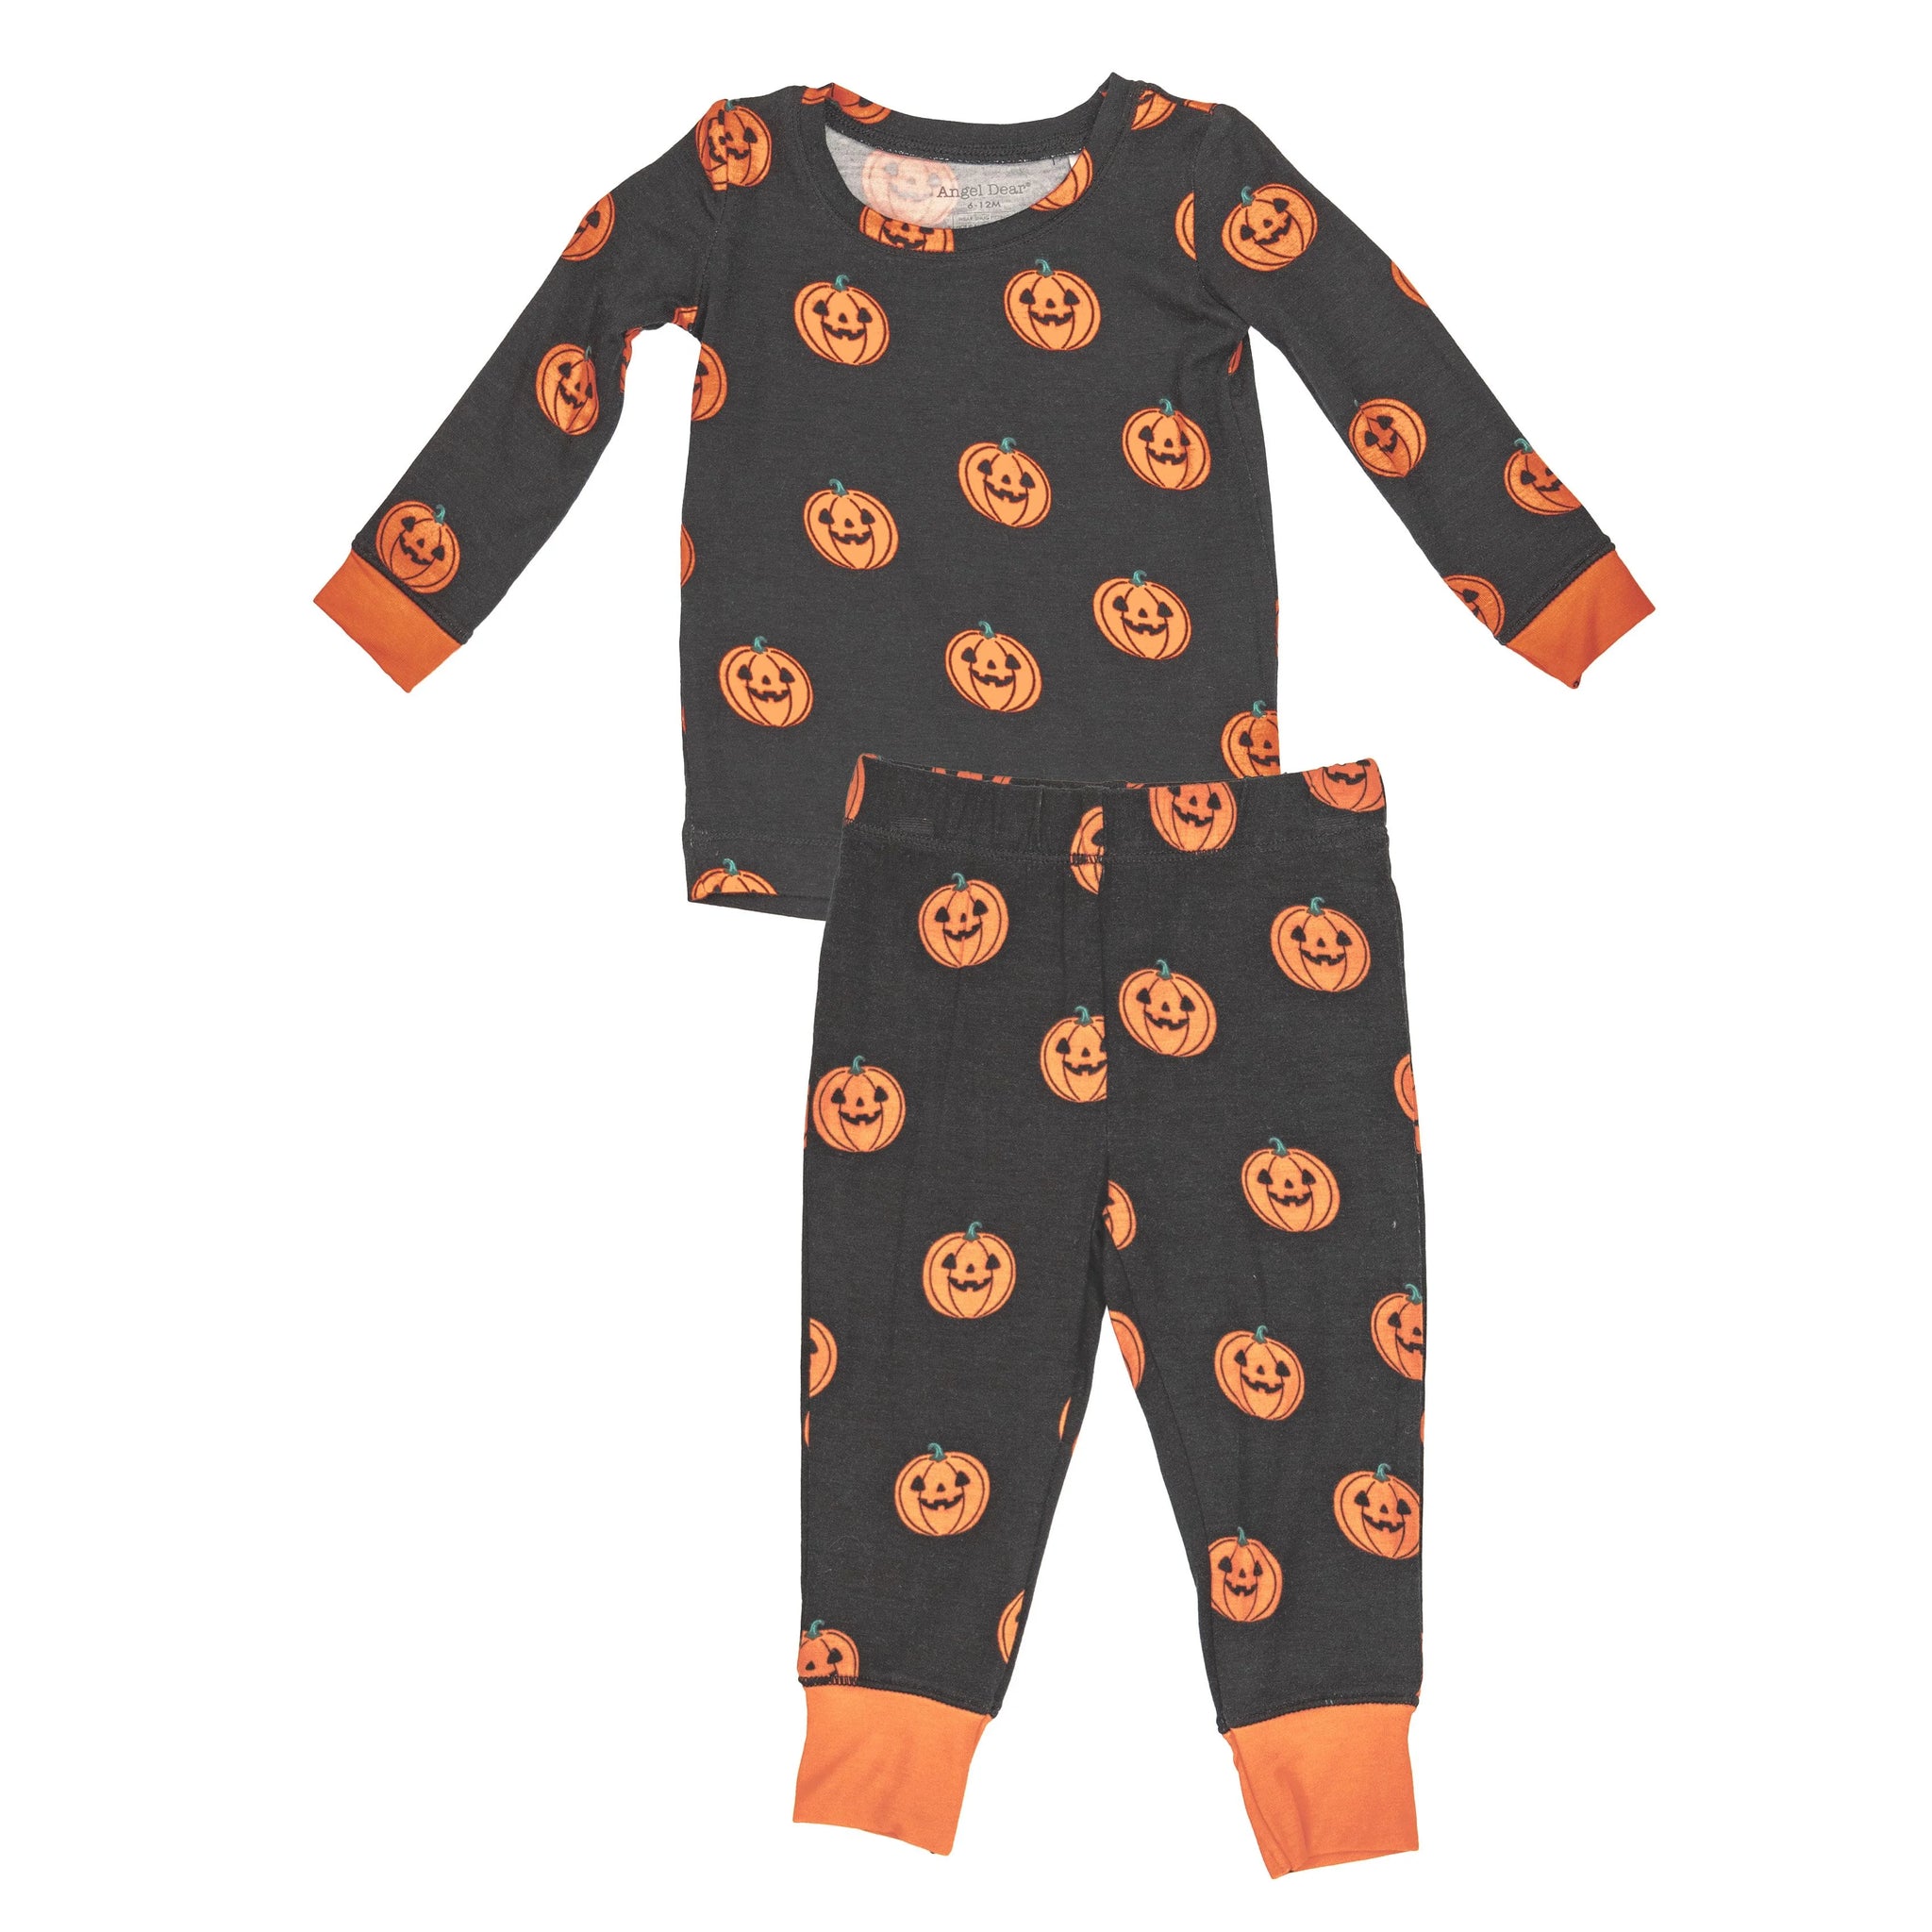 black 2 piece pajamas set with orange jack-o-lanterns